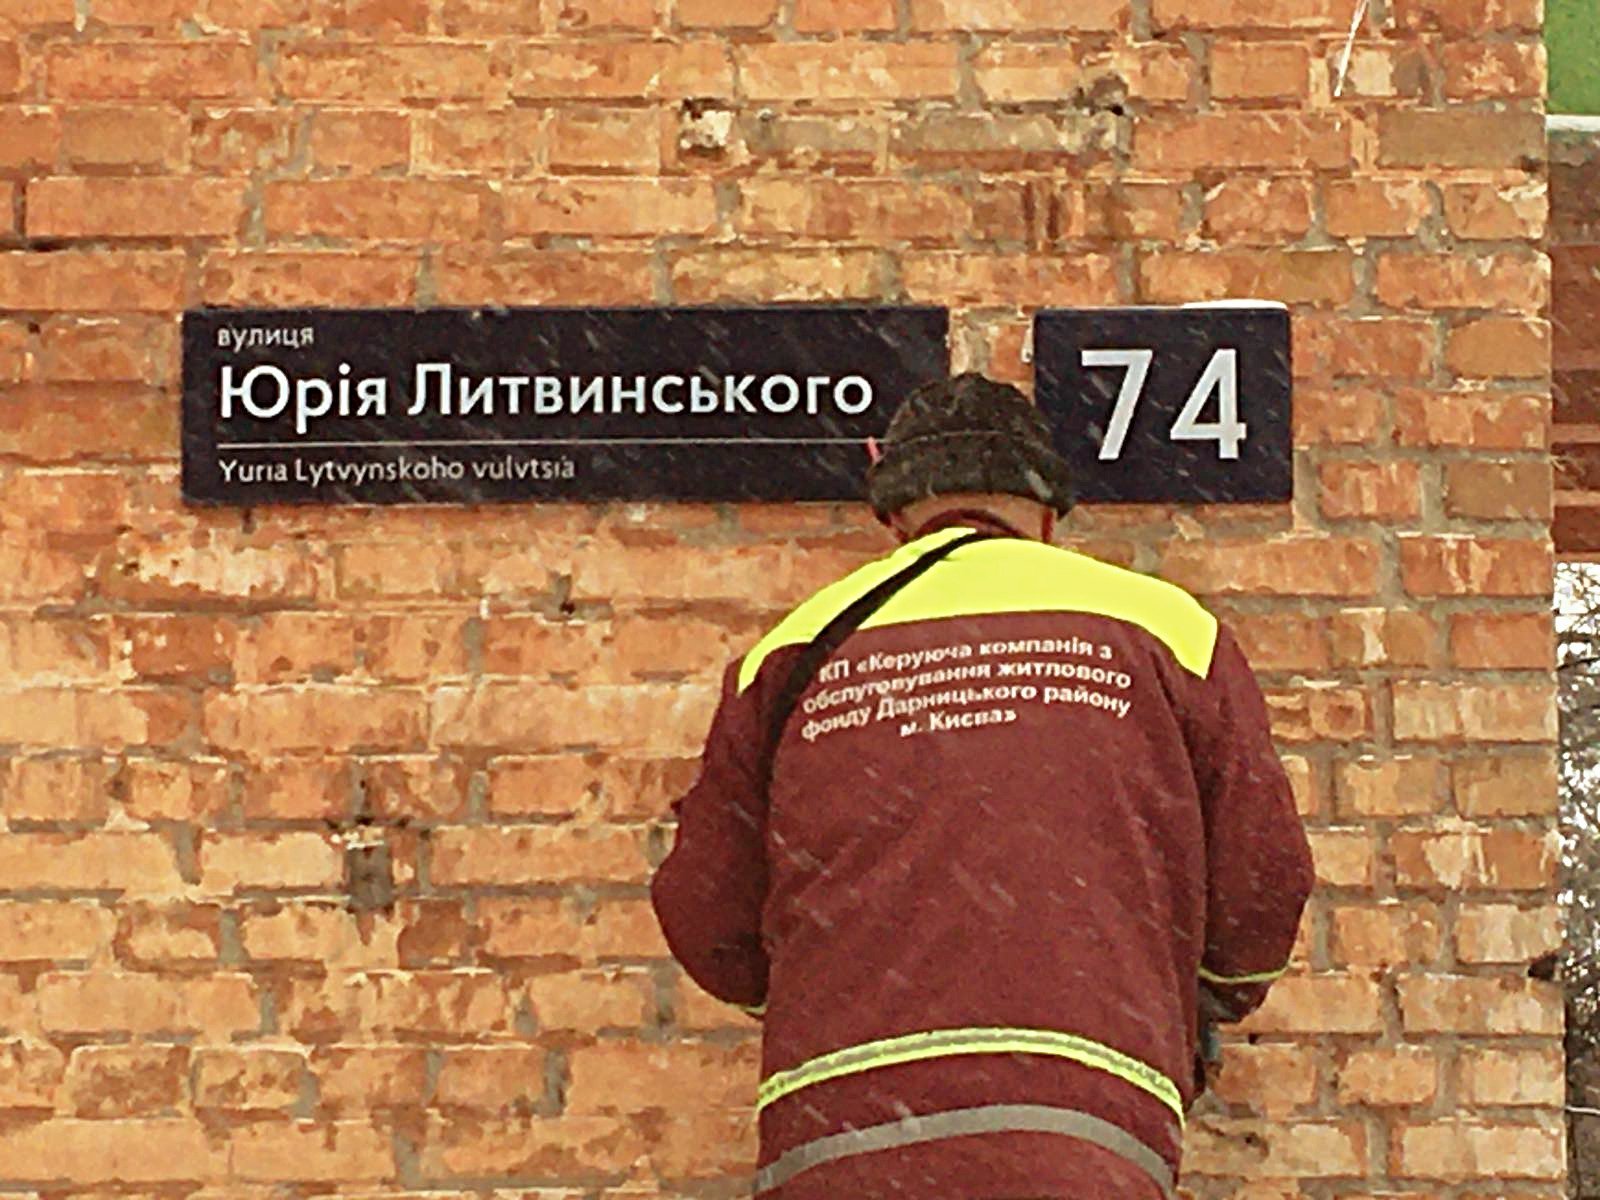 Коммунальщики Дарницкого района Киева поменяли таблички на переименованной улице (фото)